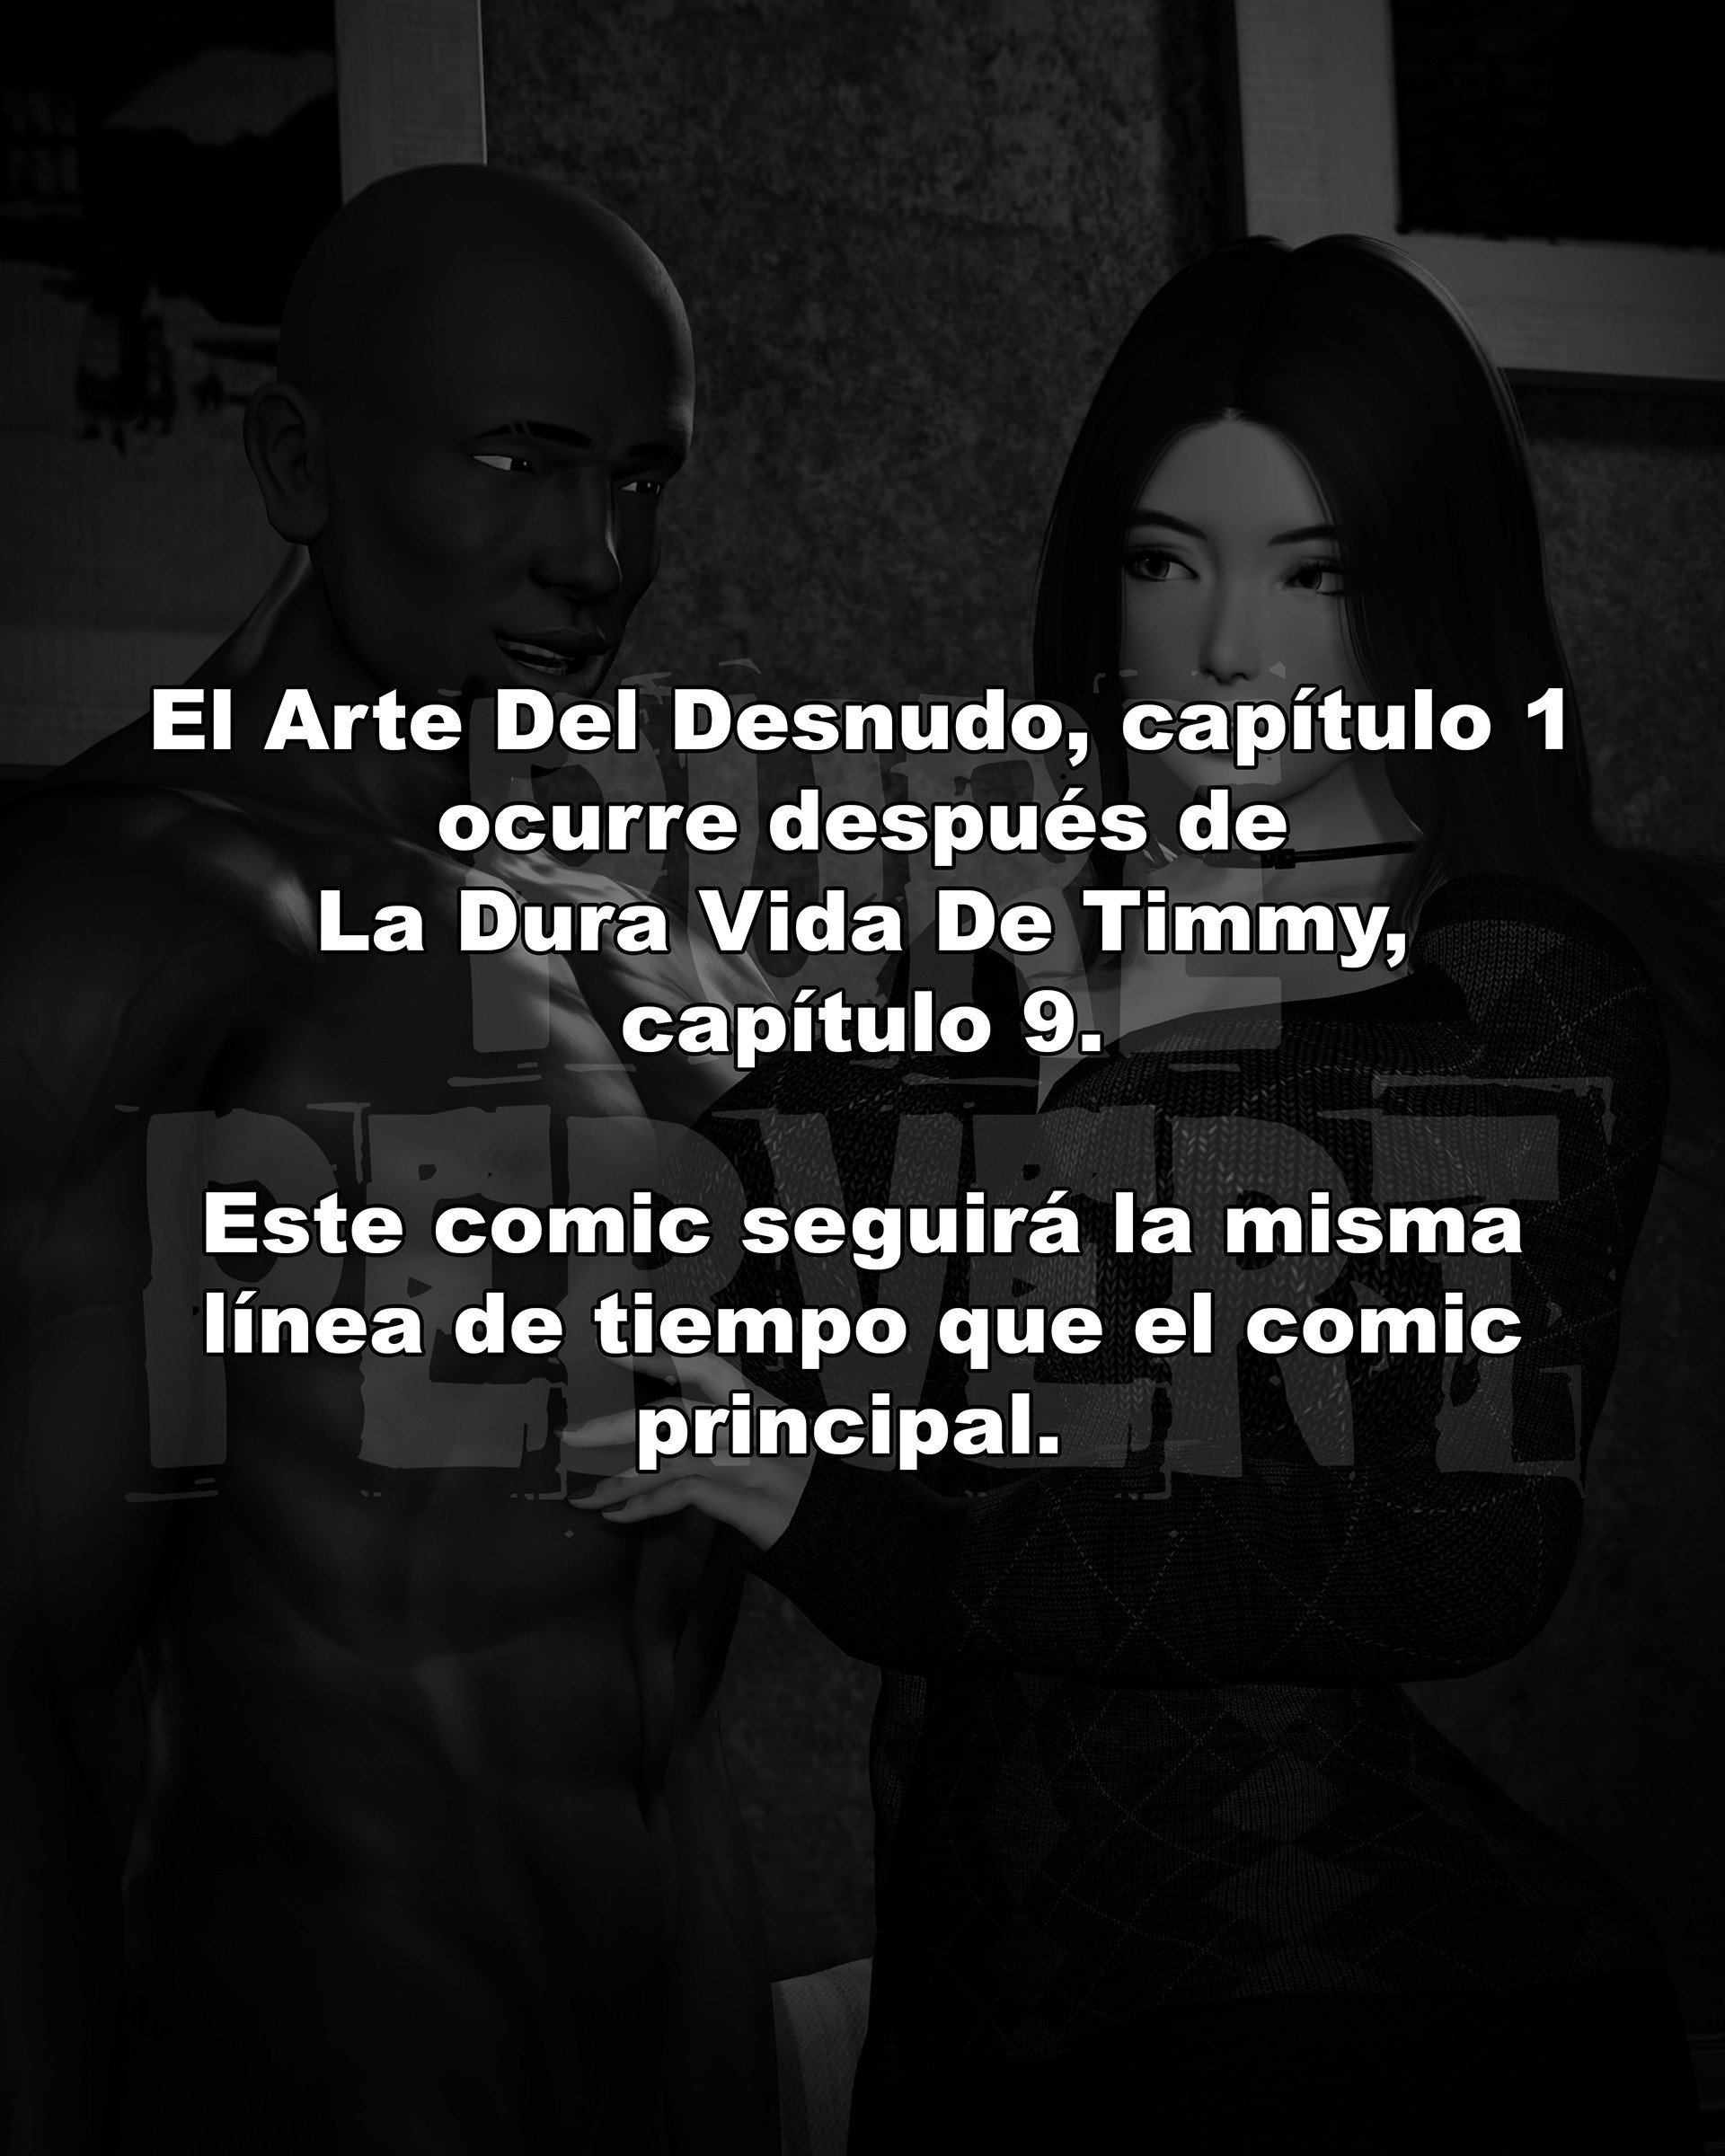 El Arte Del Desnudo 1 – PurePervert - 40298ca207484b0b42b5503e62852262